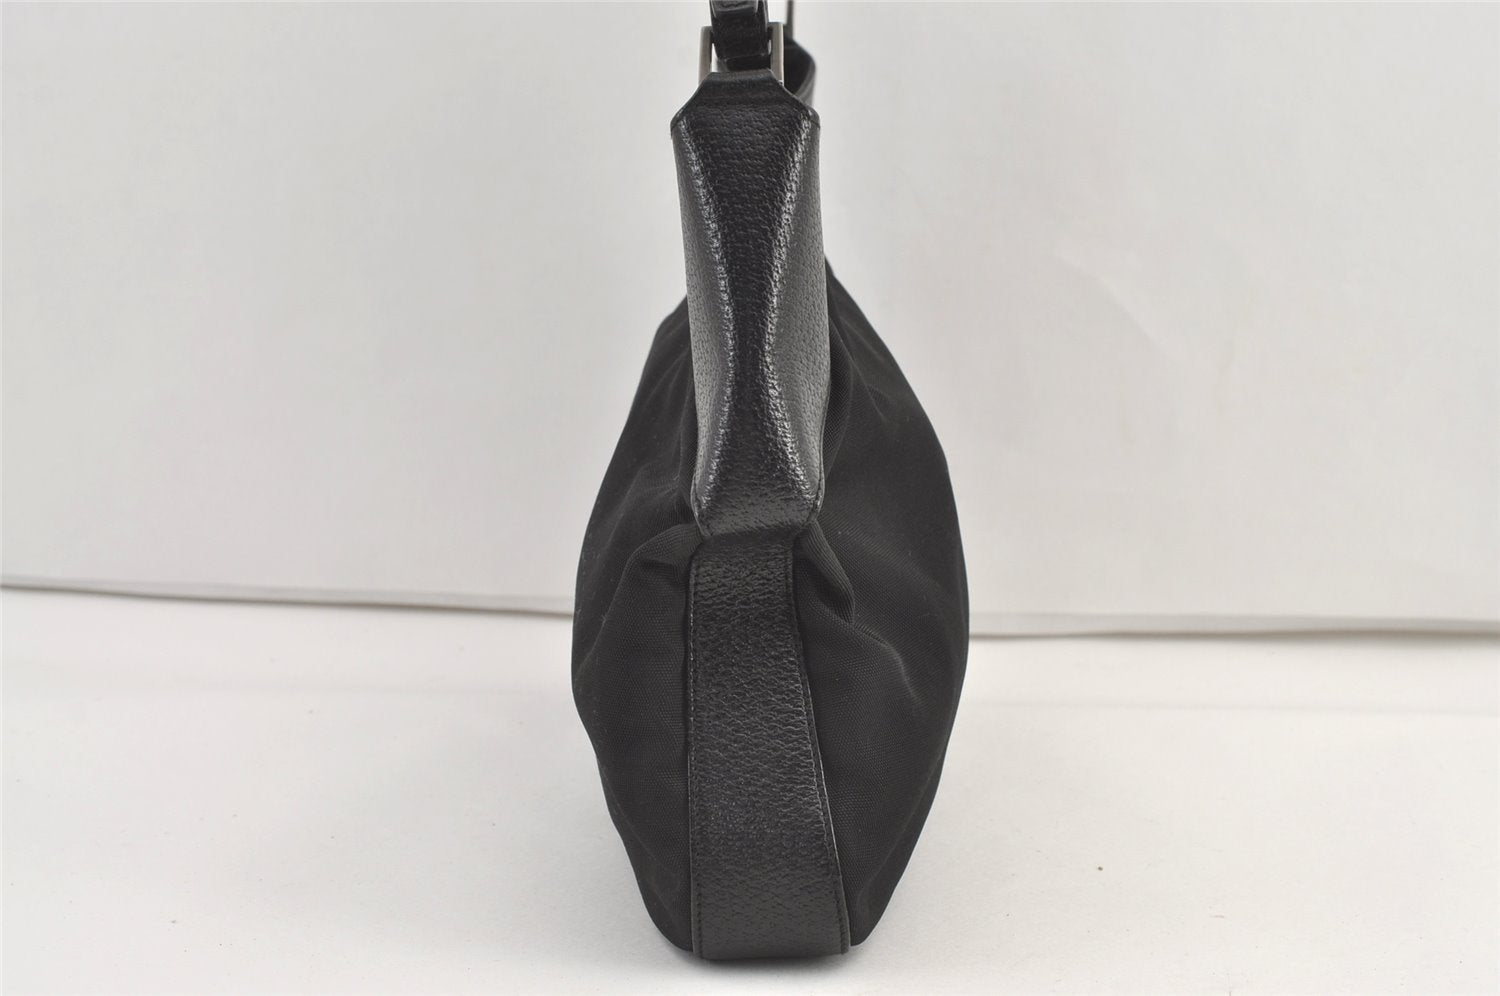 Authentic GUCCI Vintage Shoulder Bag Purse Nylon Leather 0013305 Black 8882J